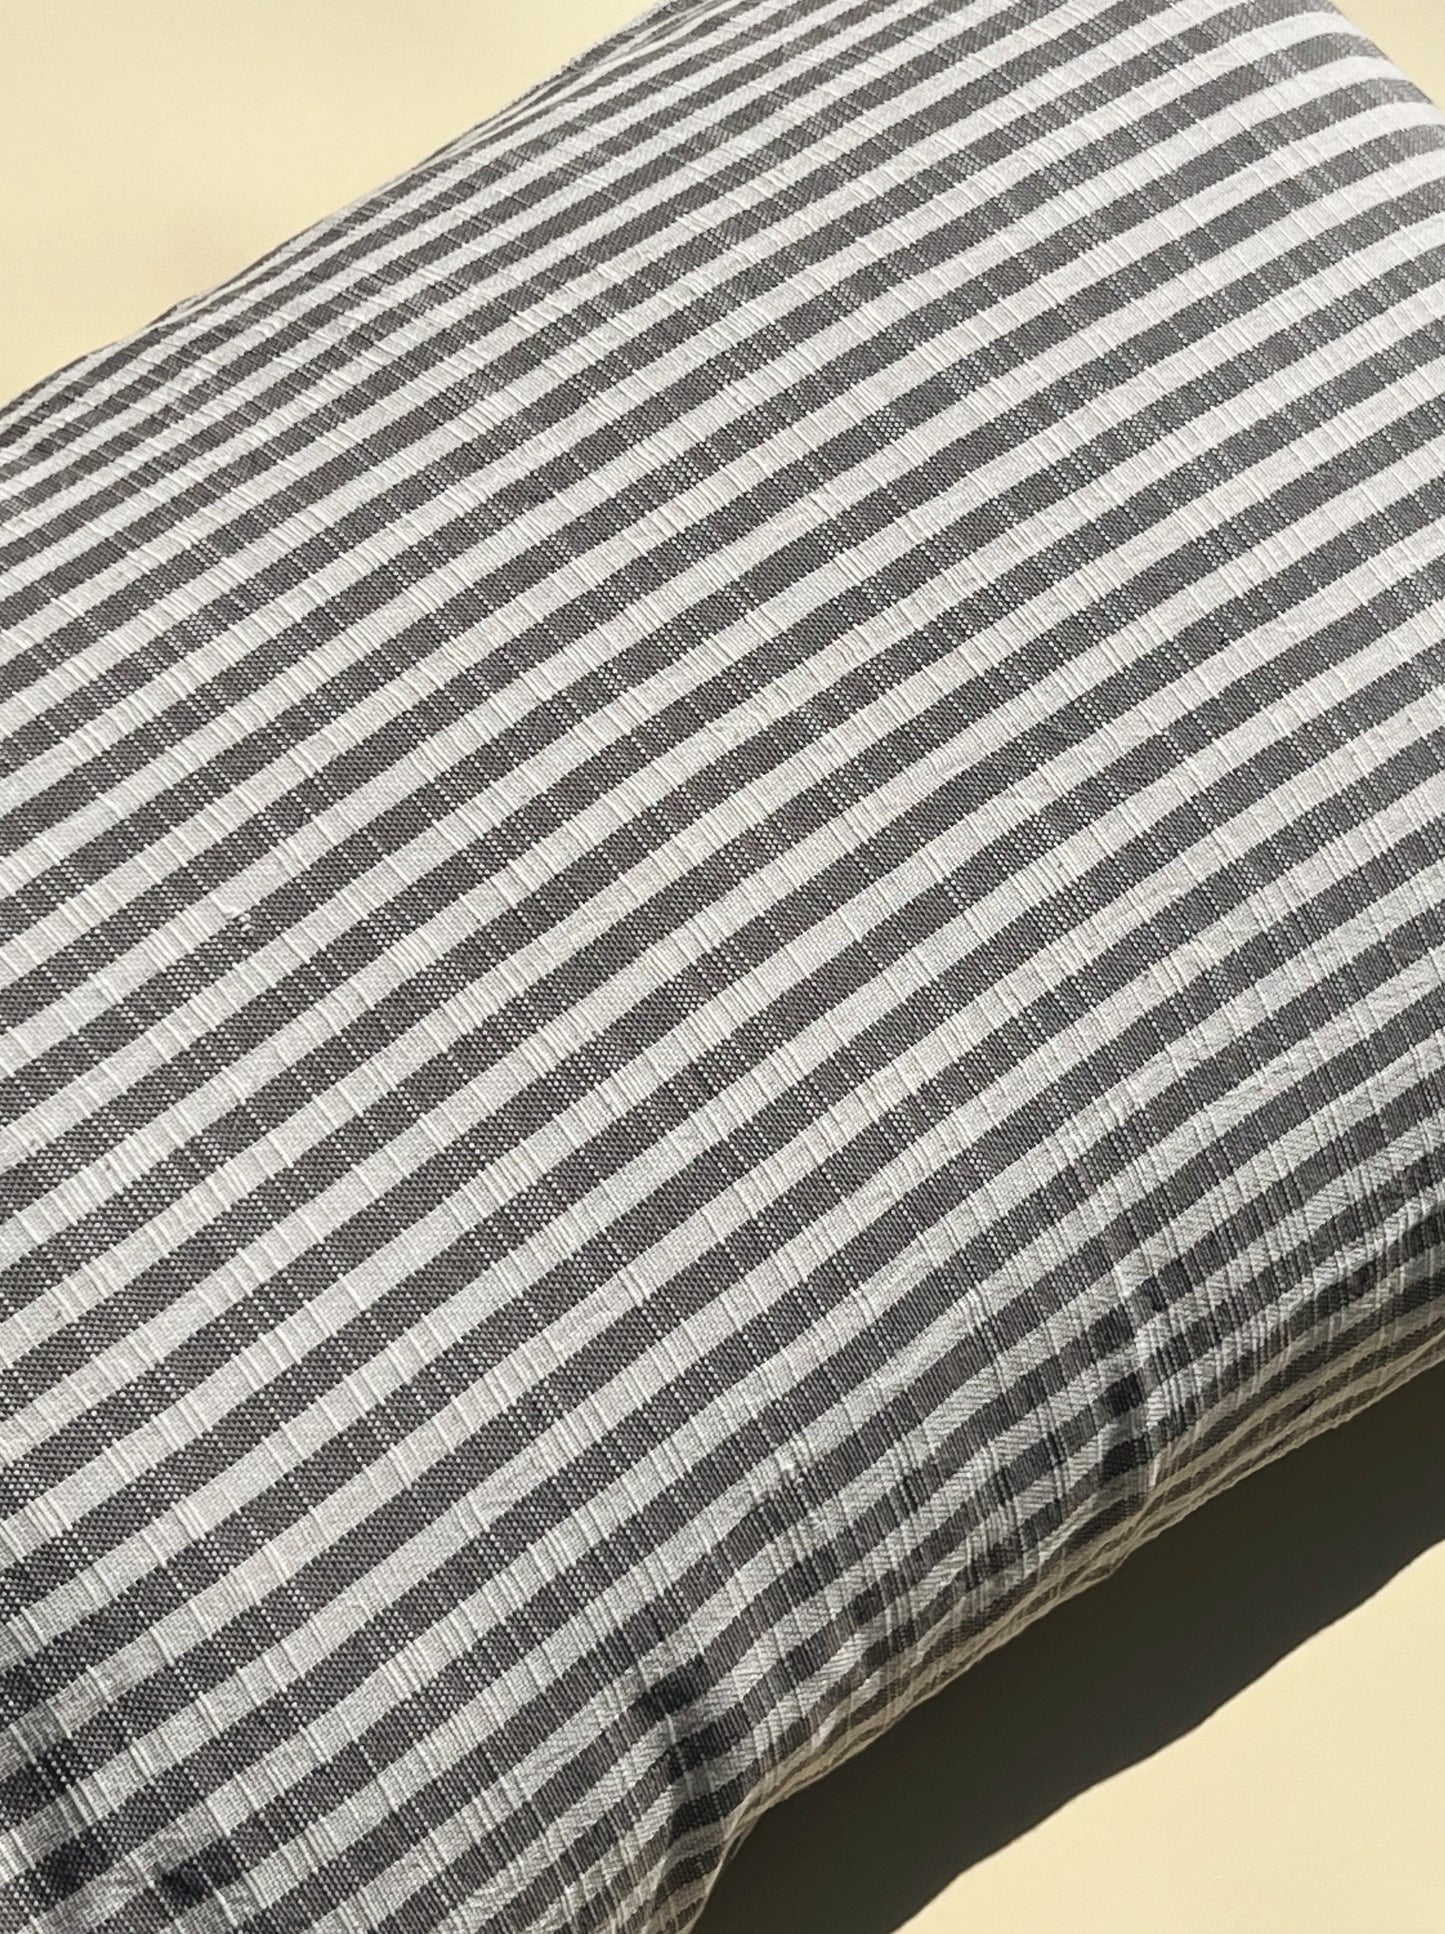 Federa Striped Grey